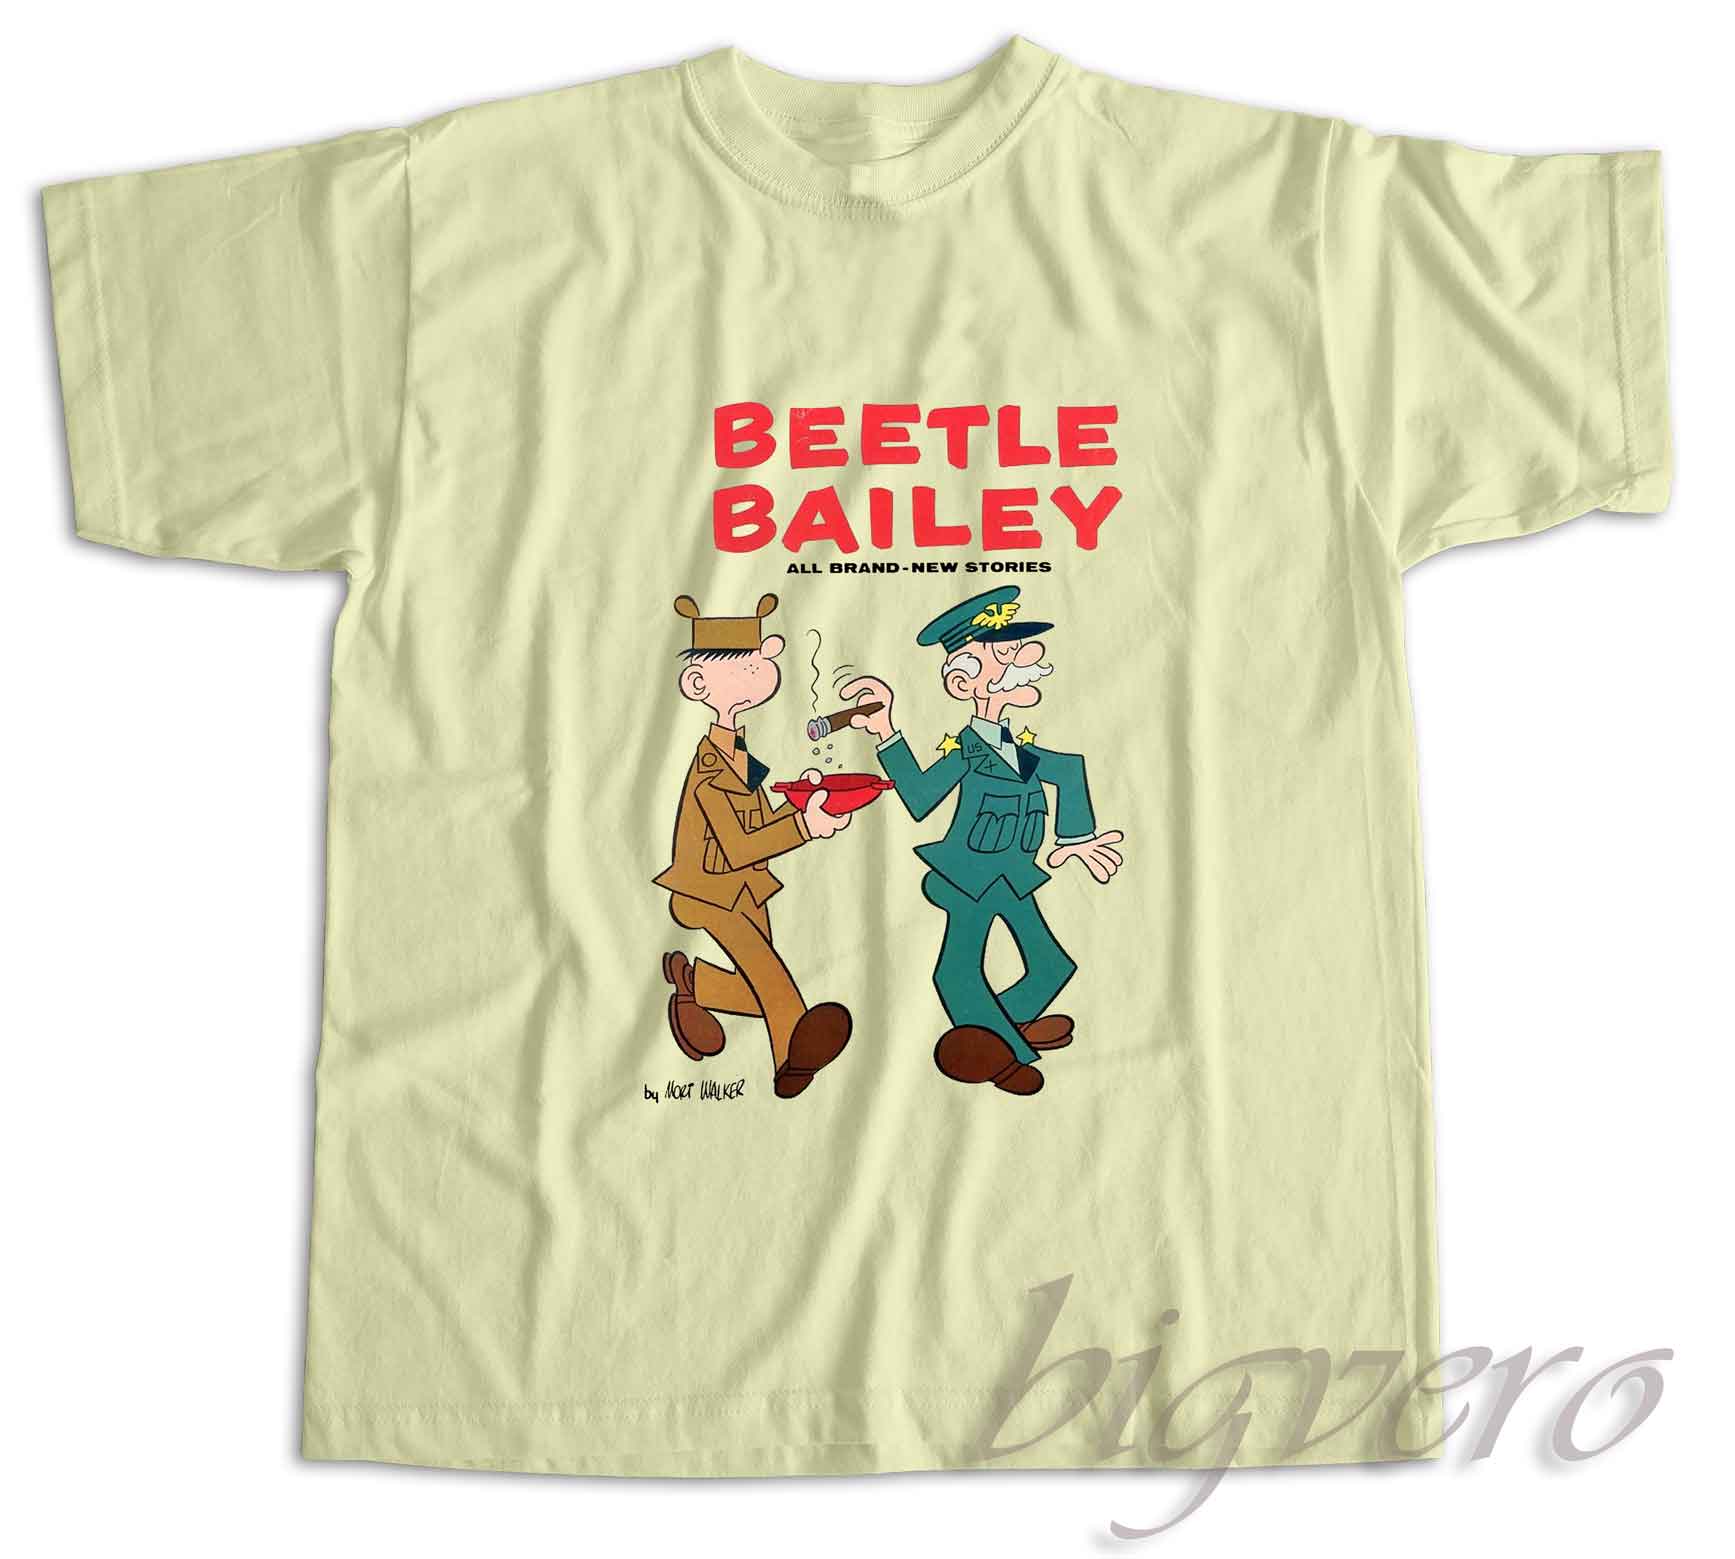 Check Now! Beetle Bailey T-Shirt - Unique Fashion Store Design | Big Vero